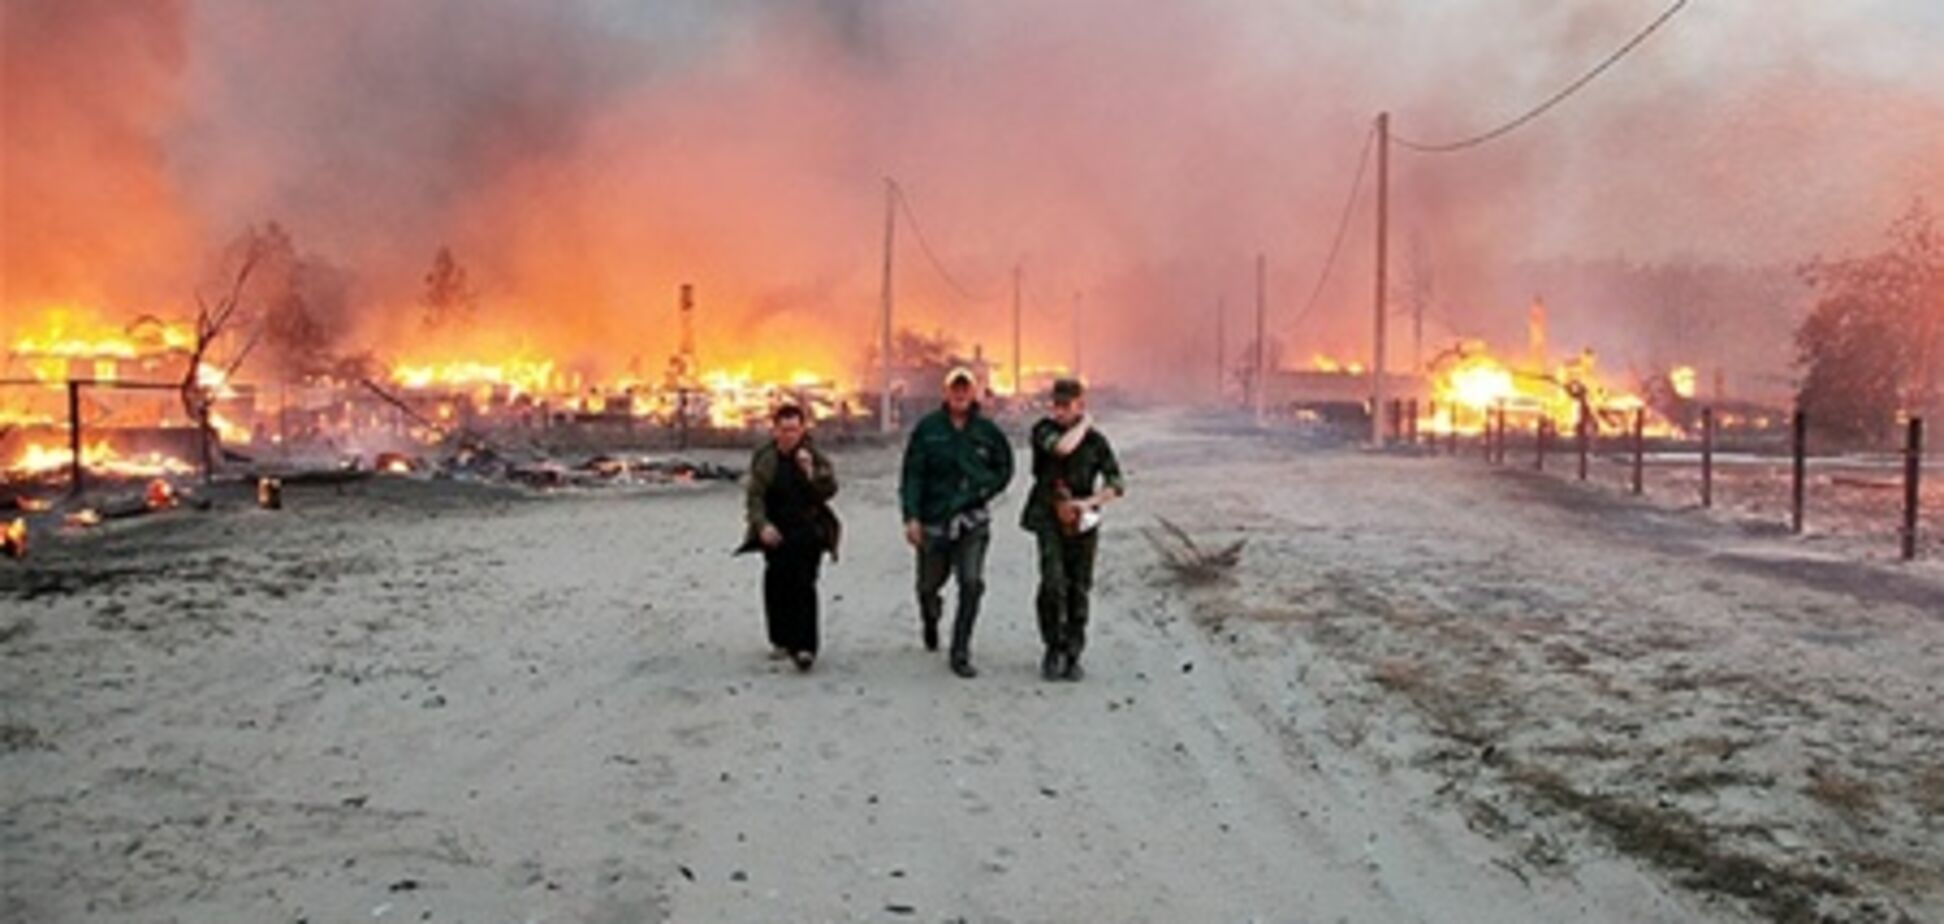 МЧС РФ: площадь пожаров в 2 раза больше прошлого года